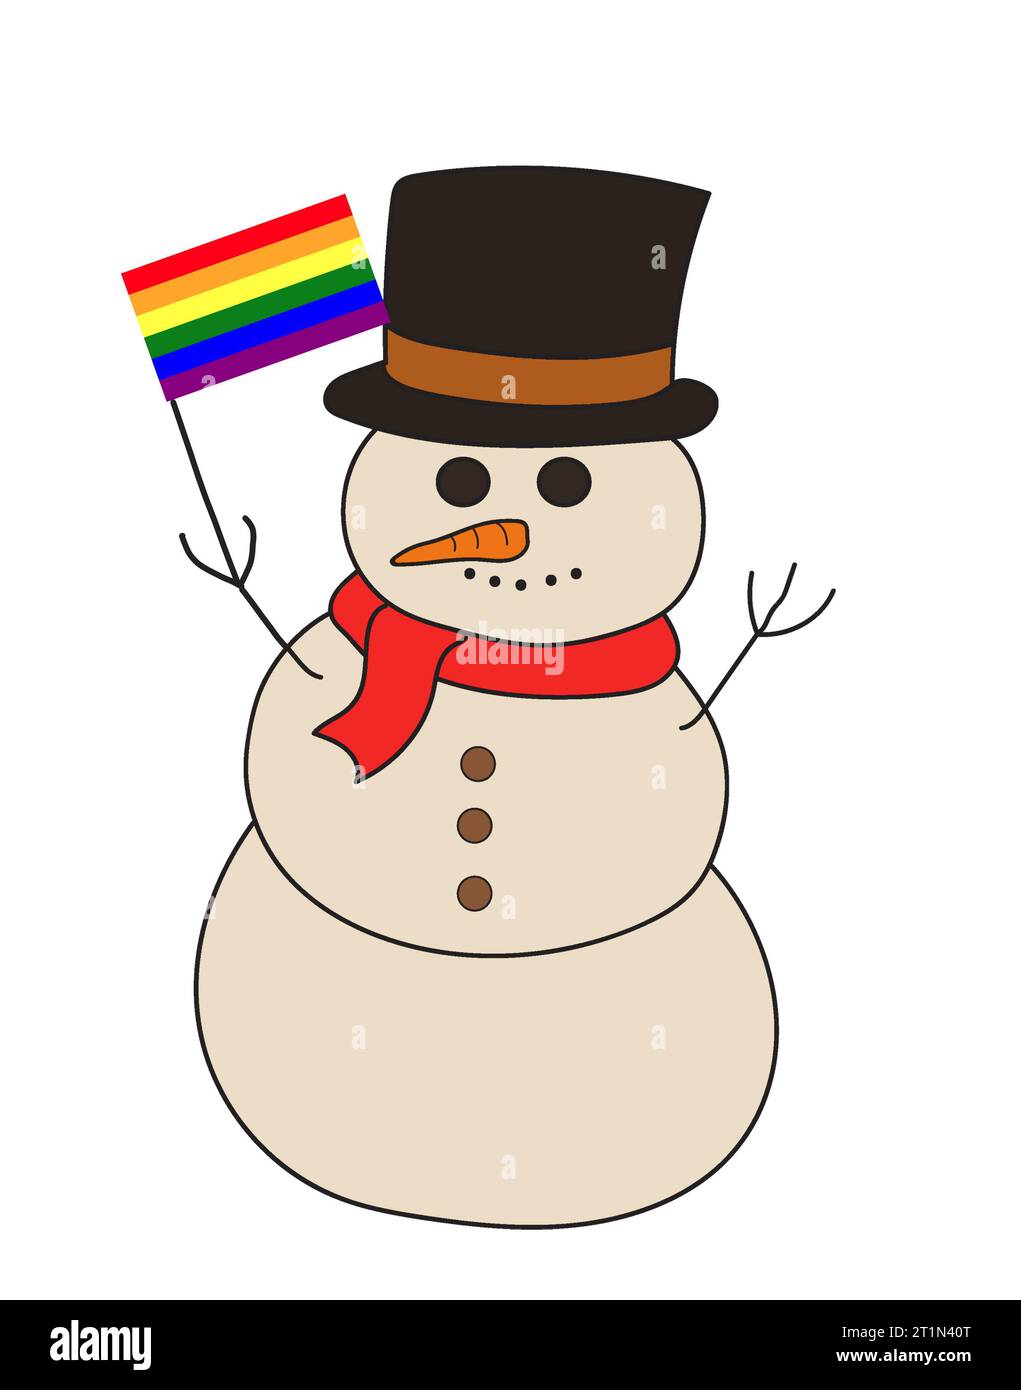 Zeichentrickzeichnung eines Schneemanns, der die Regenbogenflagge für schwulen Stolz hält. Weihnachtsfeier. Clipart-Illustration isoliert auf weißem Hintergrund. Stockfoto